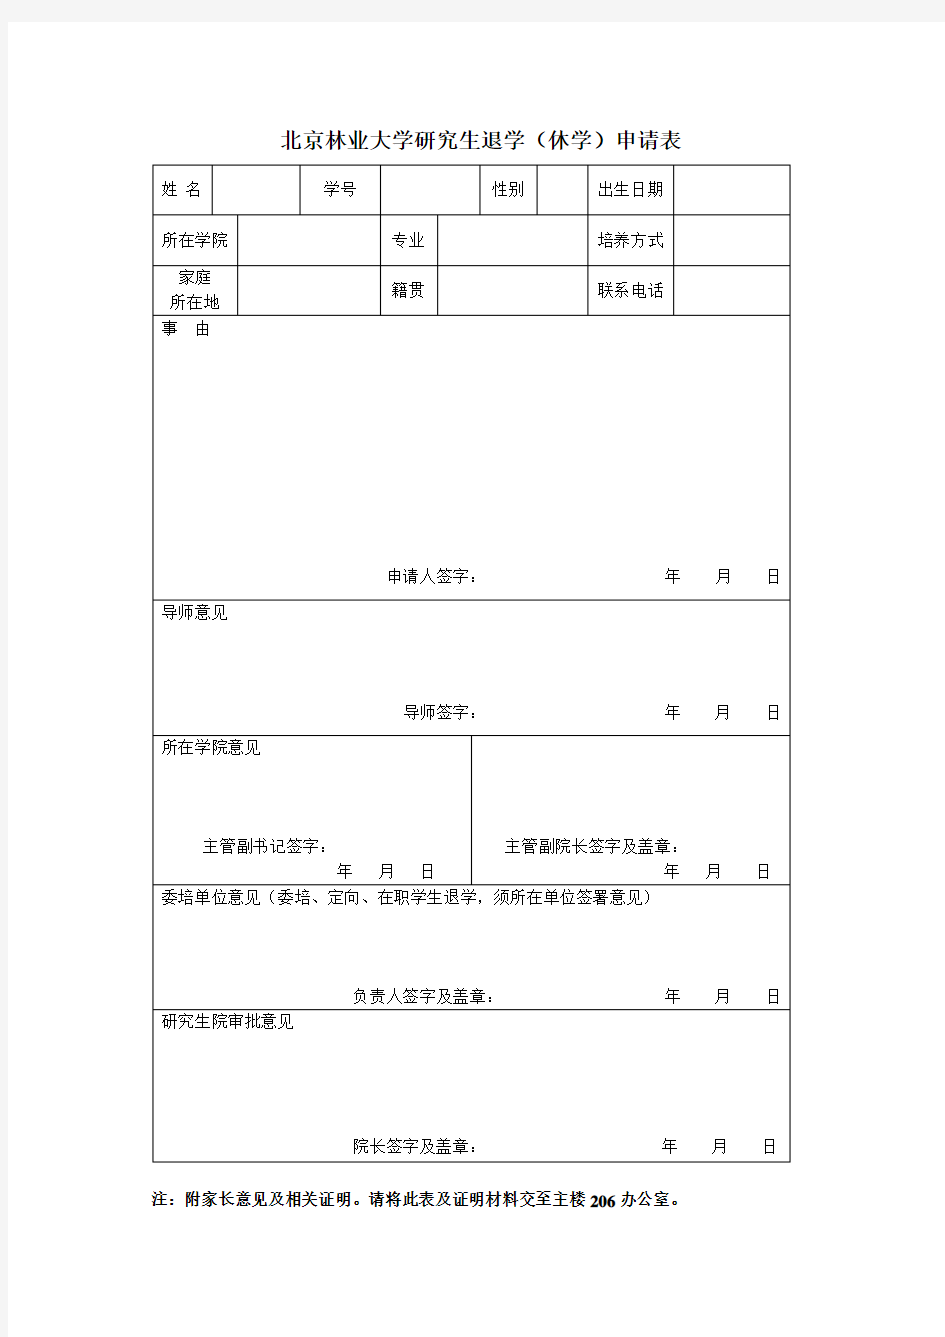 北京林业大学研究生退学休学申请表